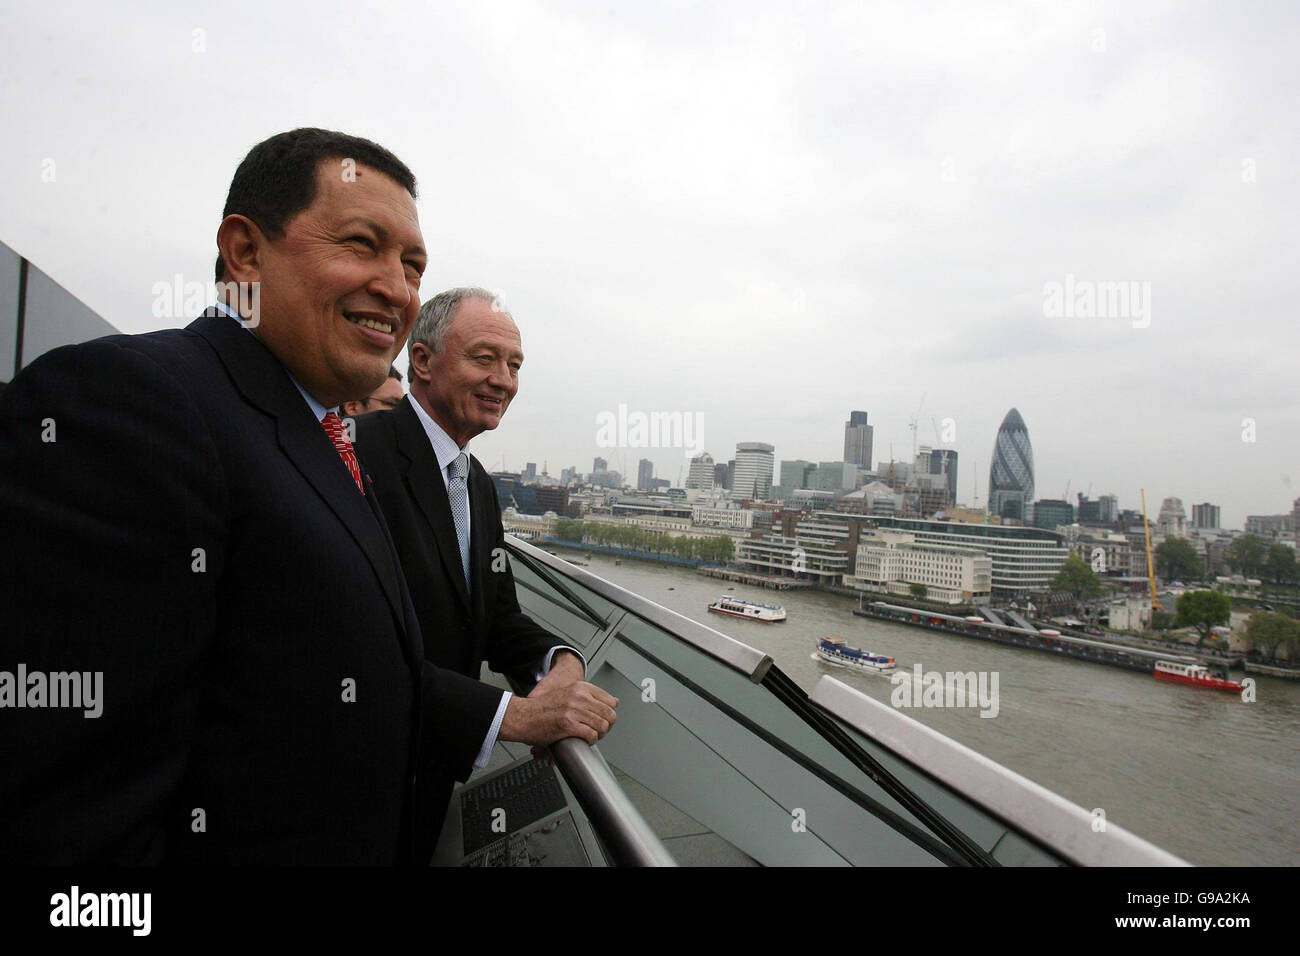 Le maire de Londres, Ken Livingstone (à droite), se présente avec le président Hugo Chavez, président du Venezuela, au GLA Buliding, à Londres. Banque D'Images